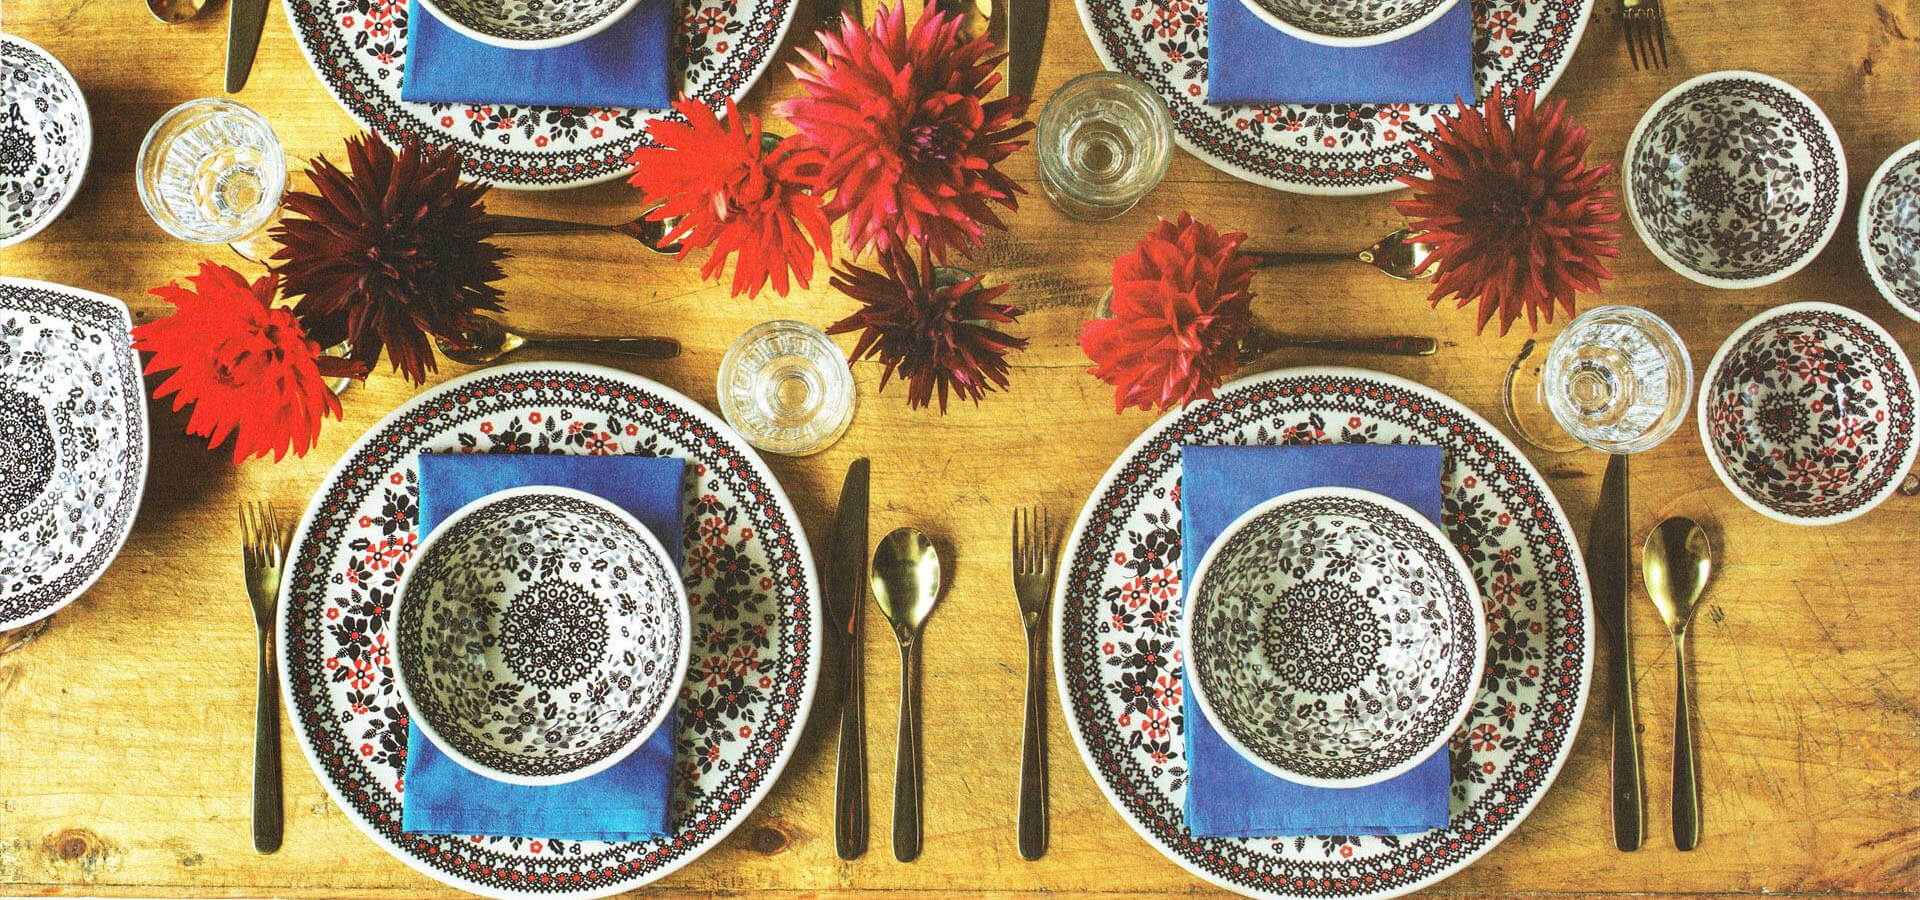 華麗な花柄食器のテーブルセッティング